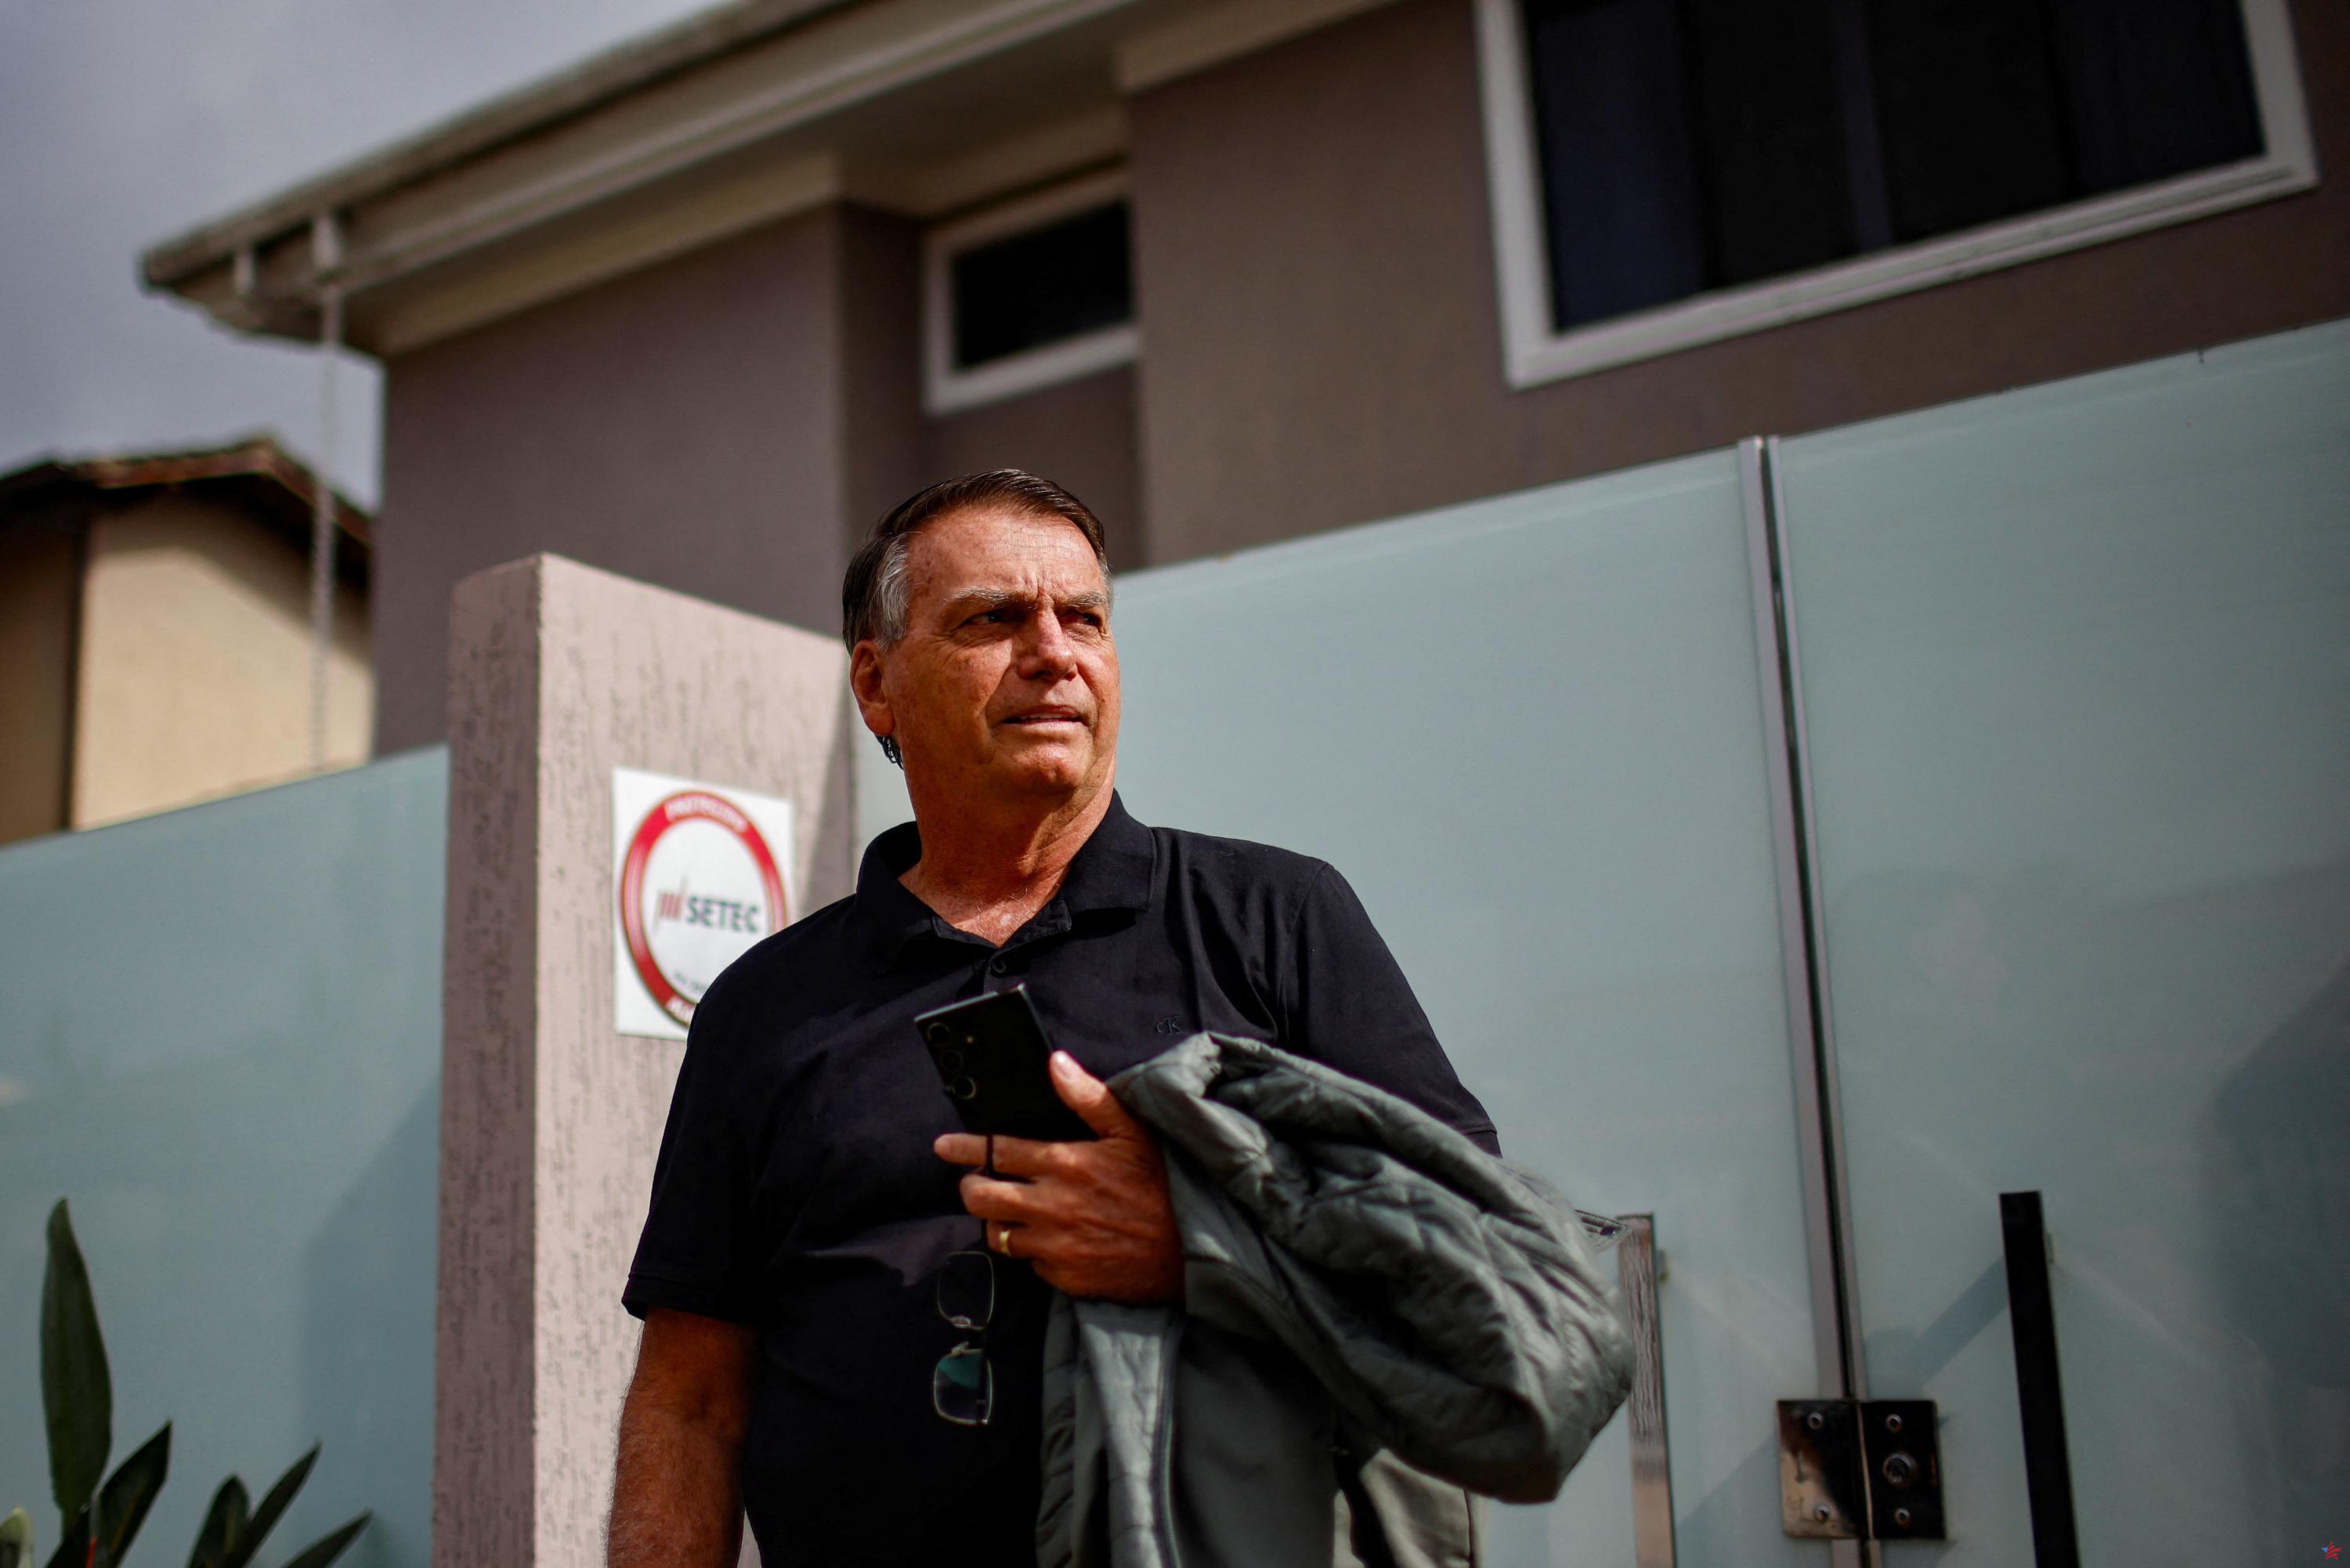 Auditado por la policía por “intento de golpe de Estado”, Bolsonaro guarda silencio según su abogado